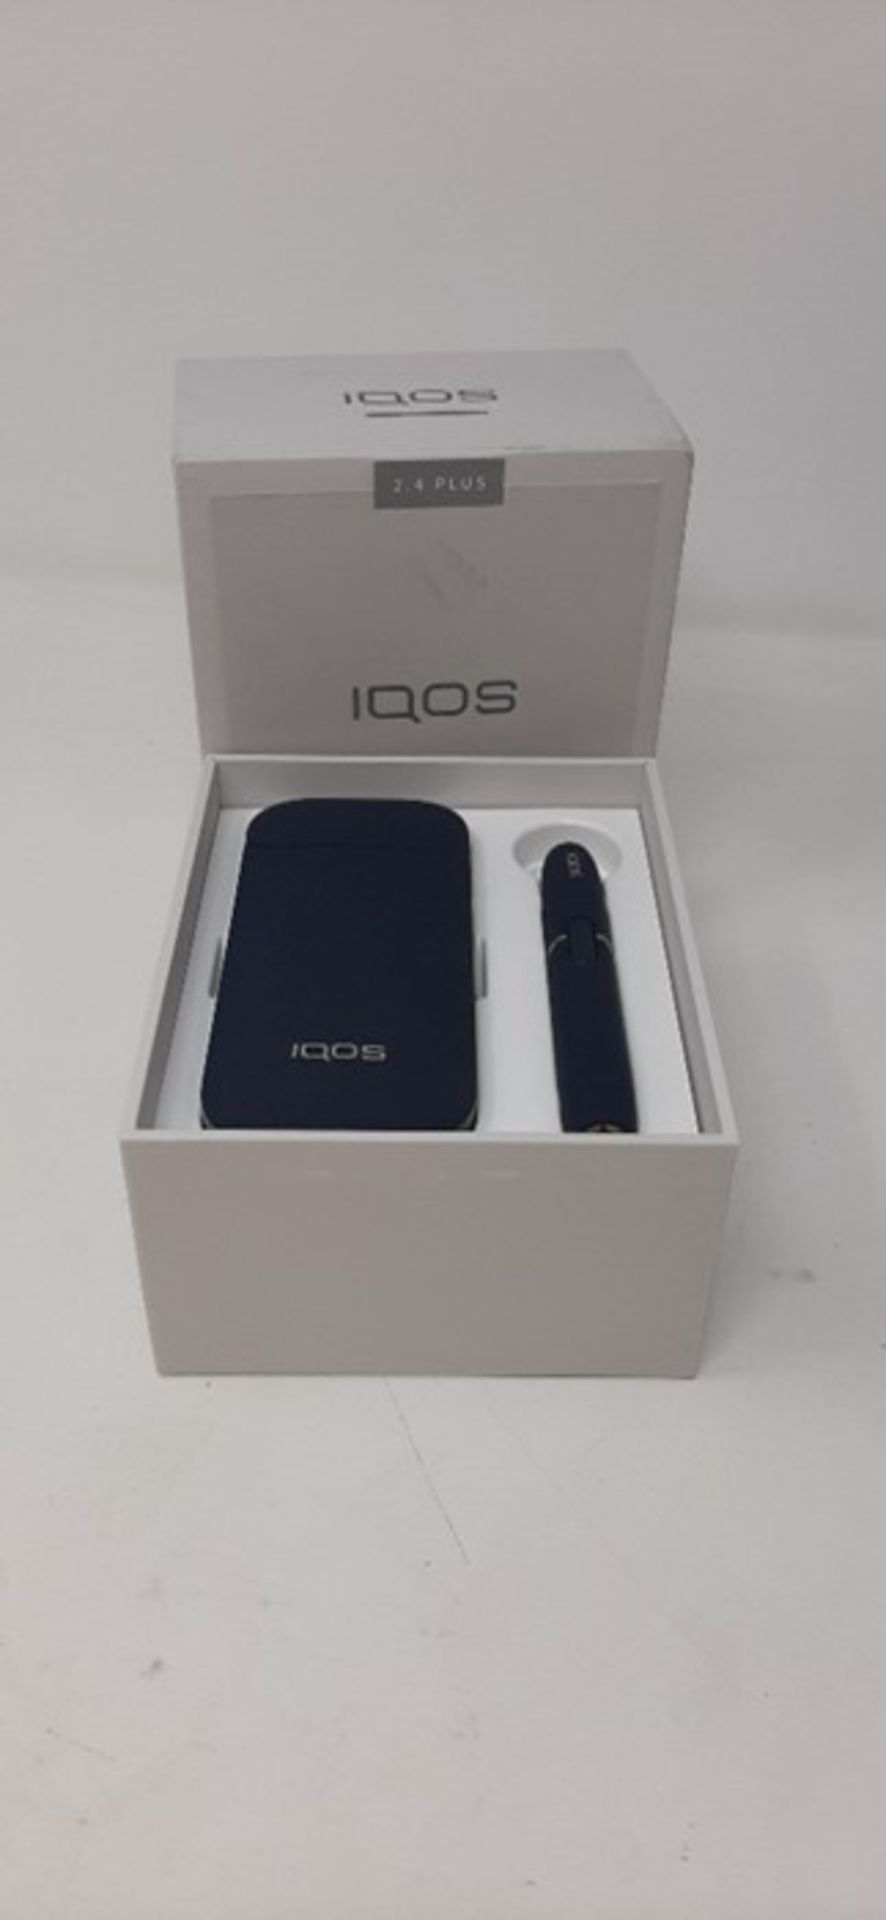 IQOS 2.4 Plus Kit, Navy (Heat Not Burn technology)